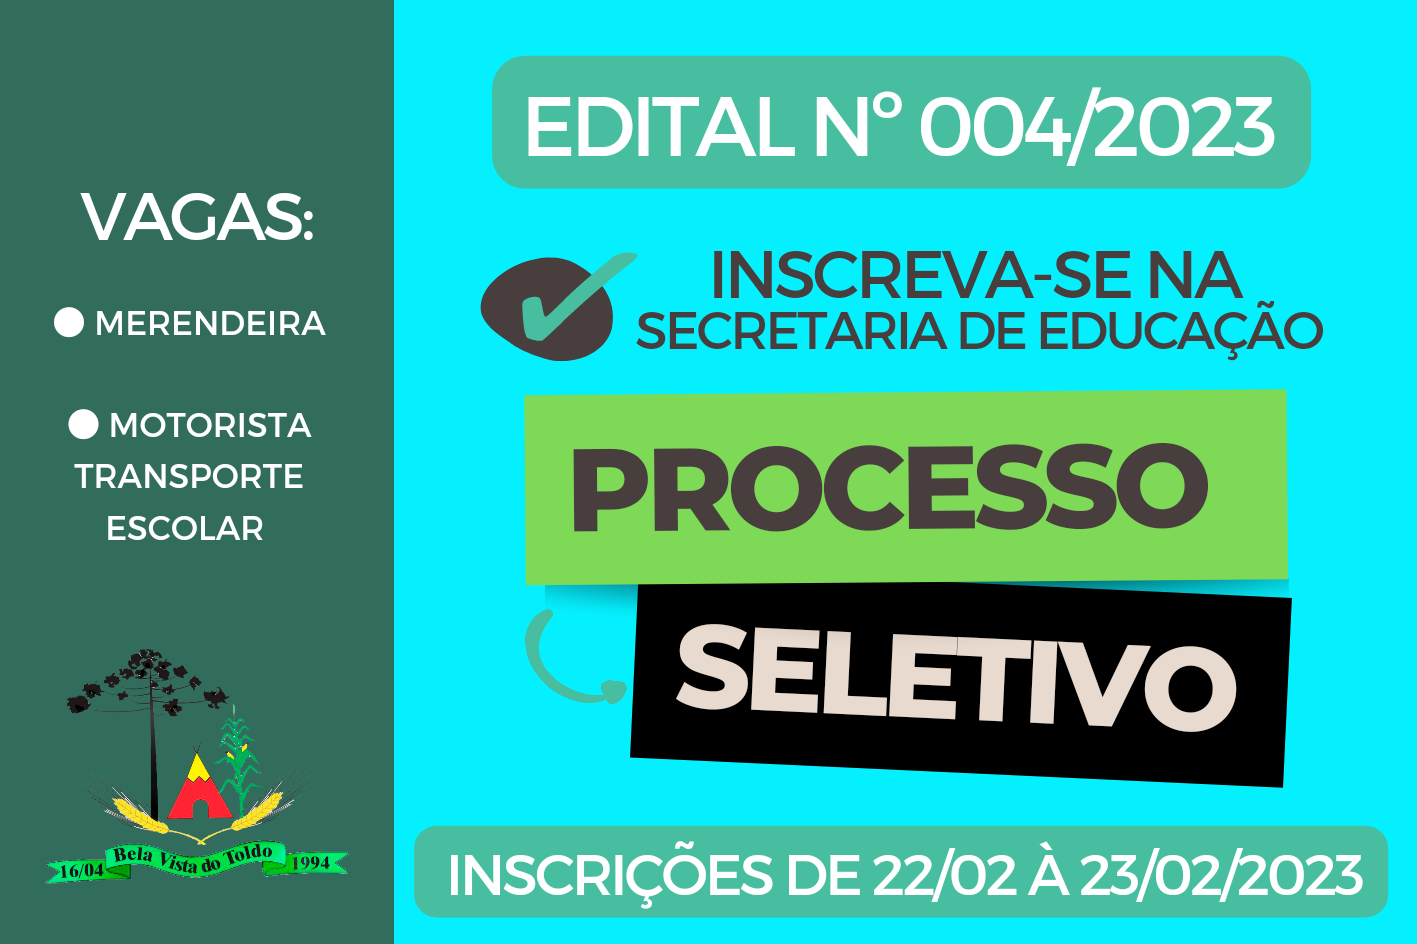 EDITAL Nº 004/2023 DE 13 FEV 2023 PROCESSO SELETIVO NA EDUCAÇÃO